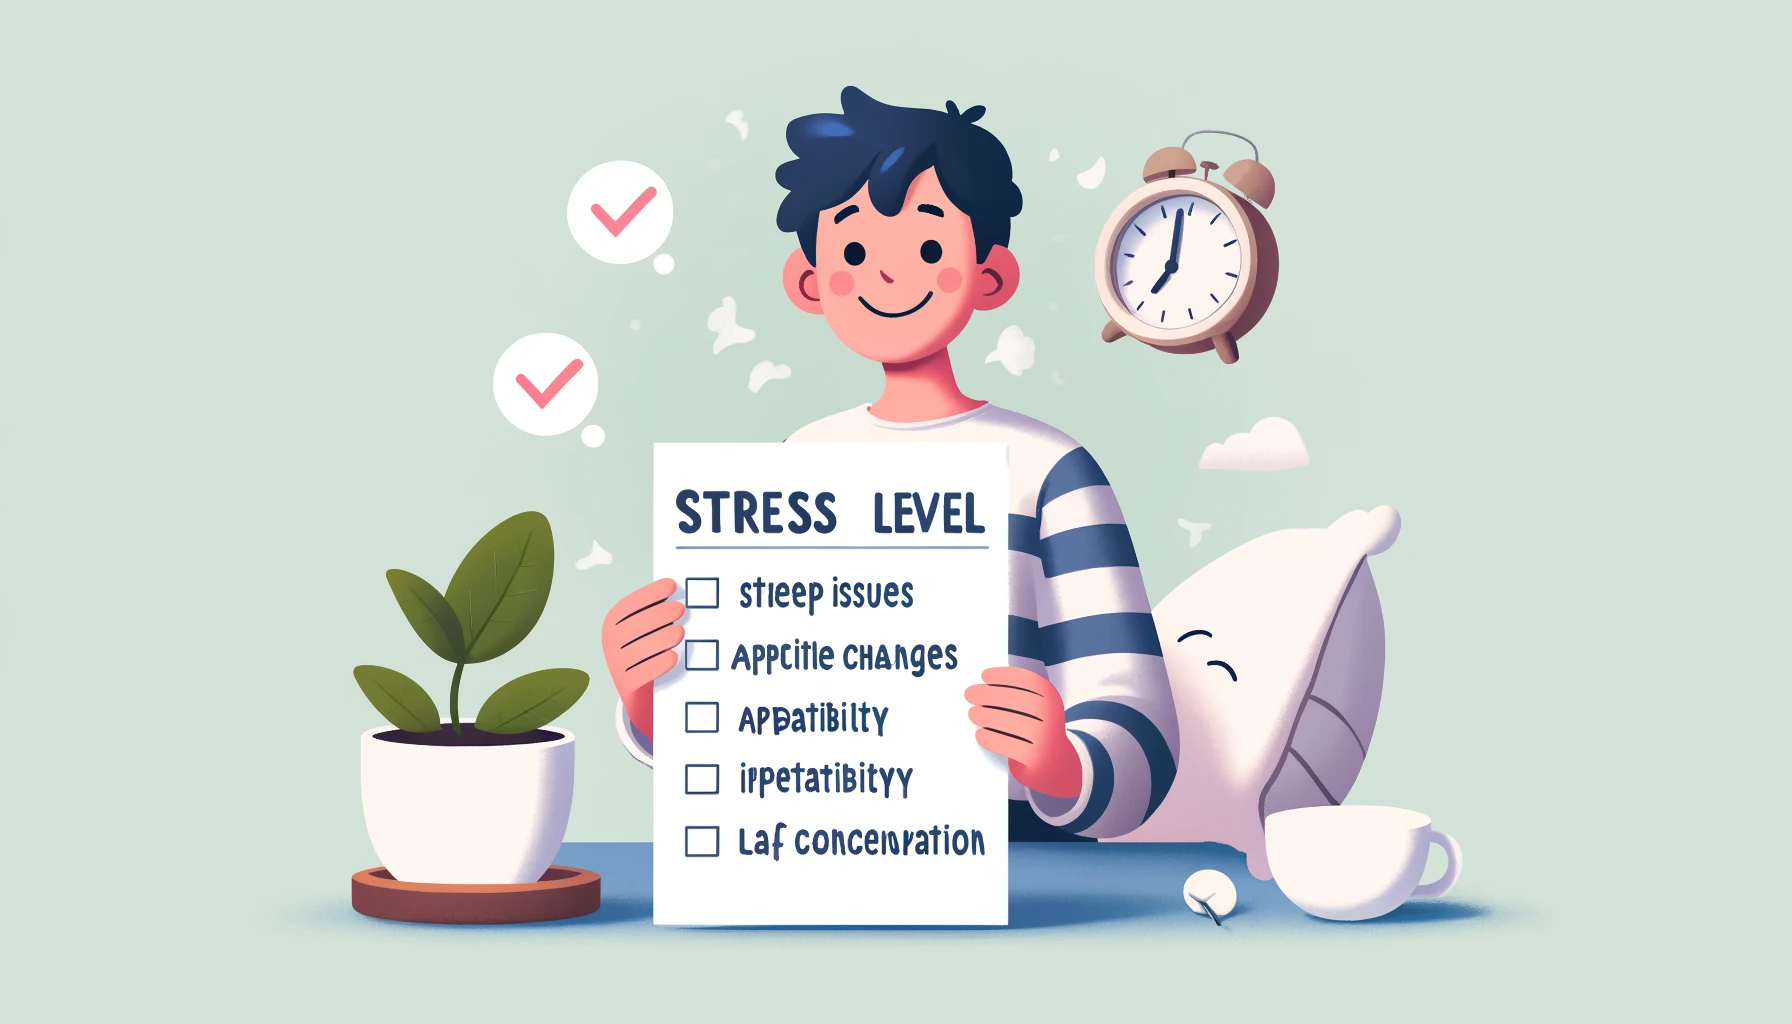 あなたのストレスレベルをチェックしよう！簡単なテストで自己診断。